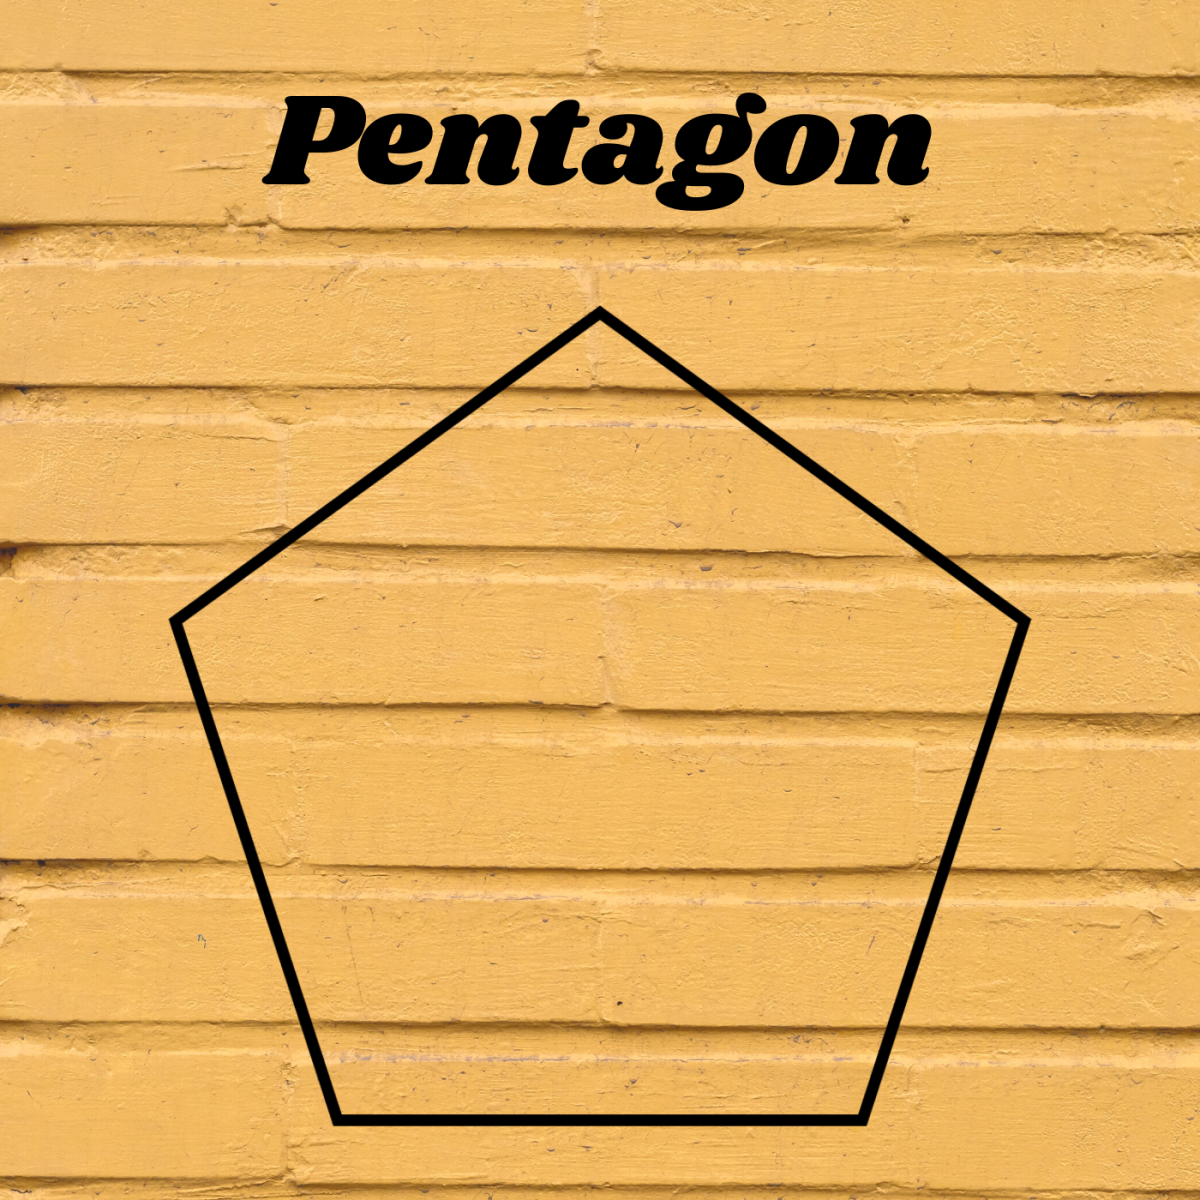 Pentagons have five sides.